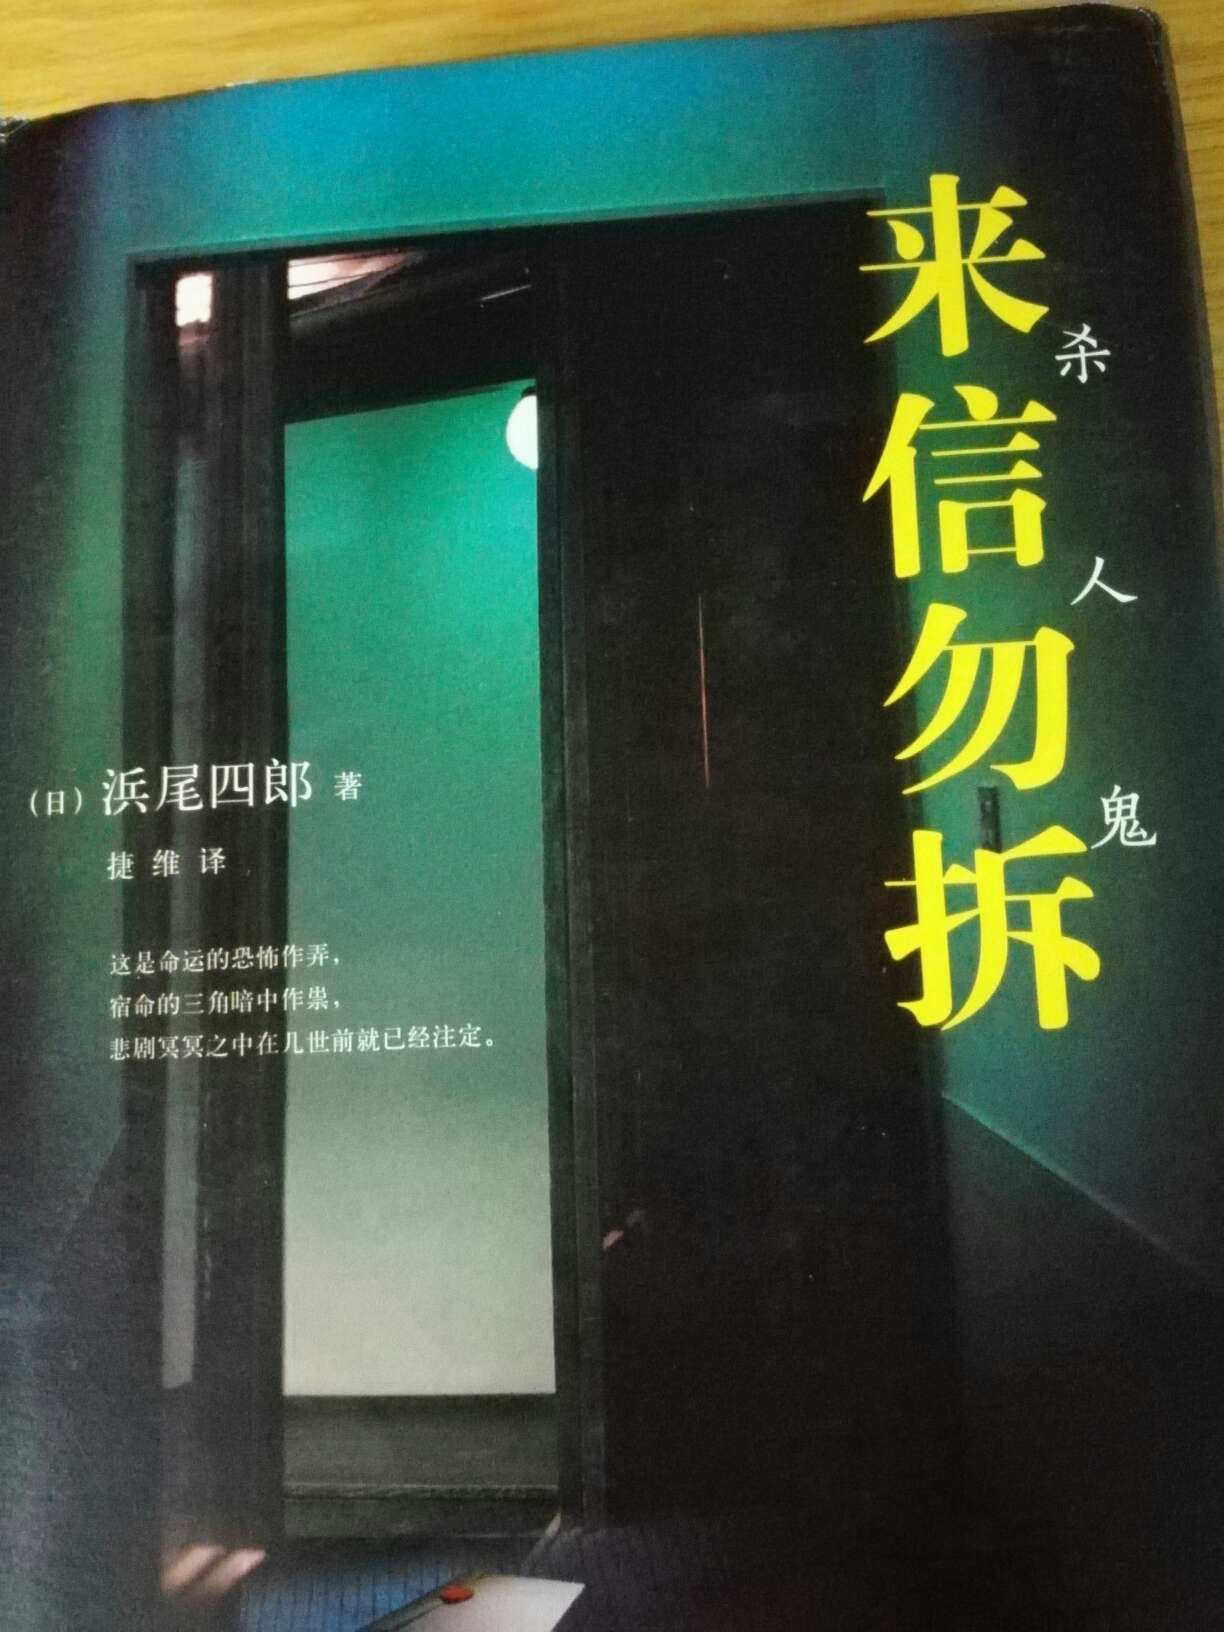 的书就是给力，这本书还是不错的，有种江户川乱步的气息。